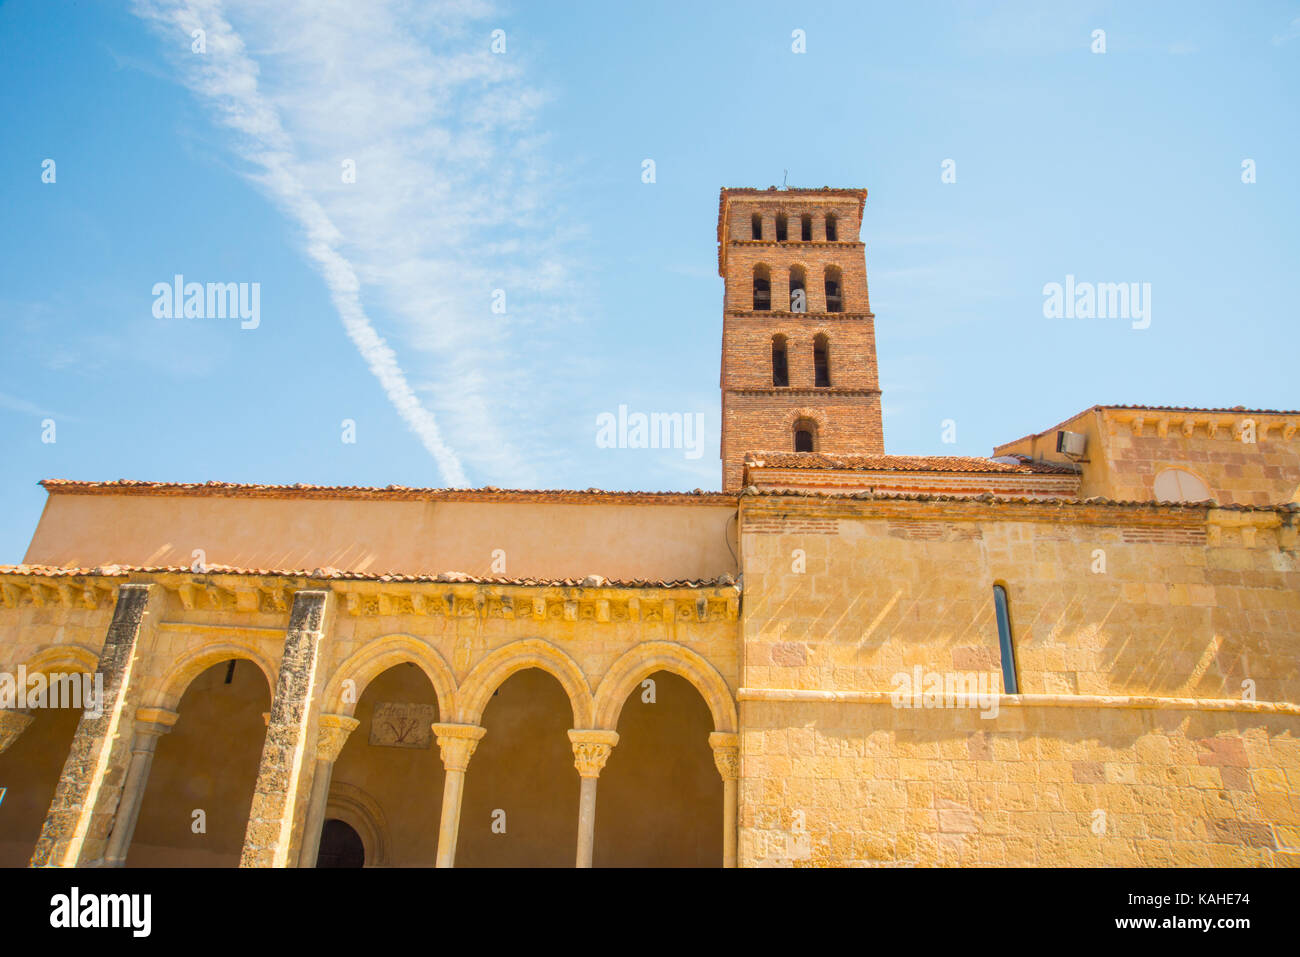 Facade of San Lorenzo church. Segovia, Spain. Stock Photo